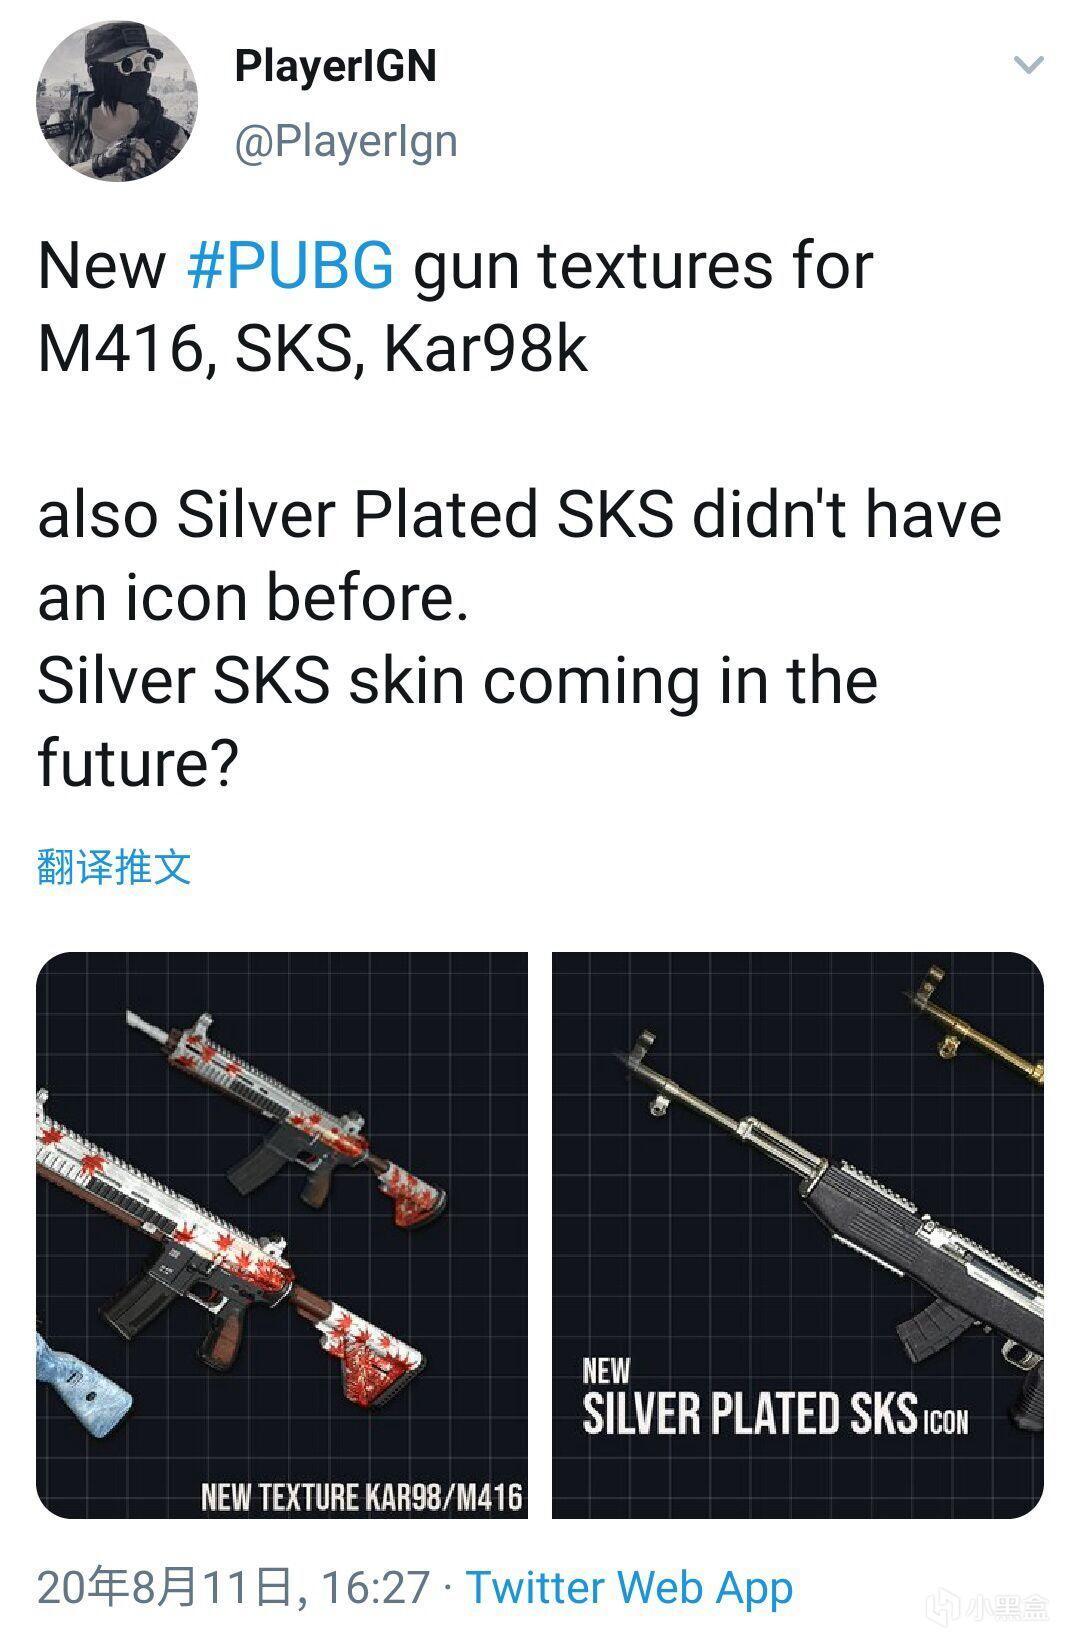 绝地求生新版本M416、SKS、Kar98k模型重做贴图一览